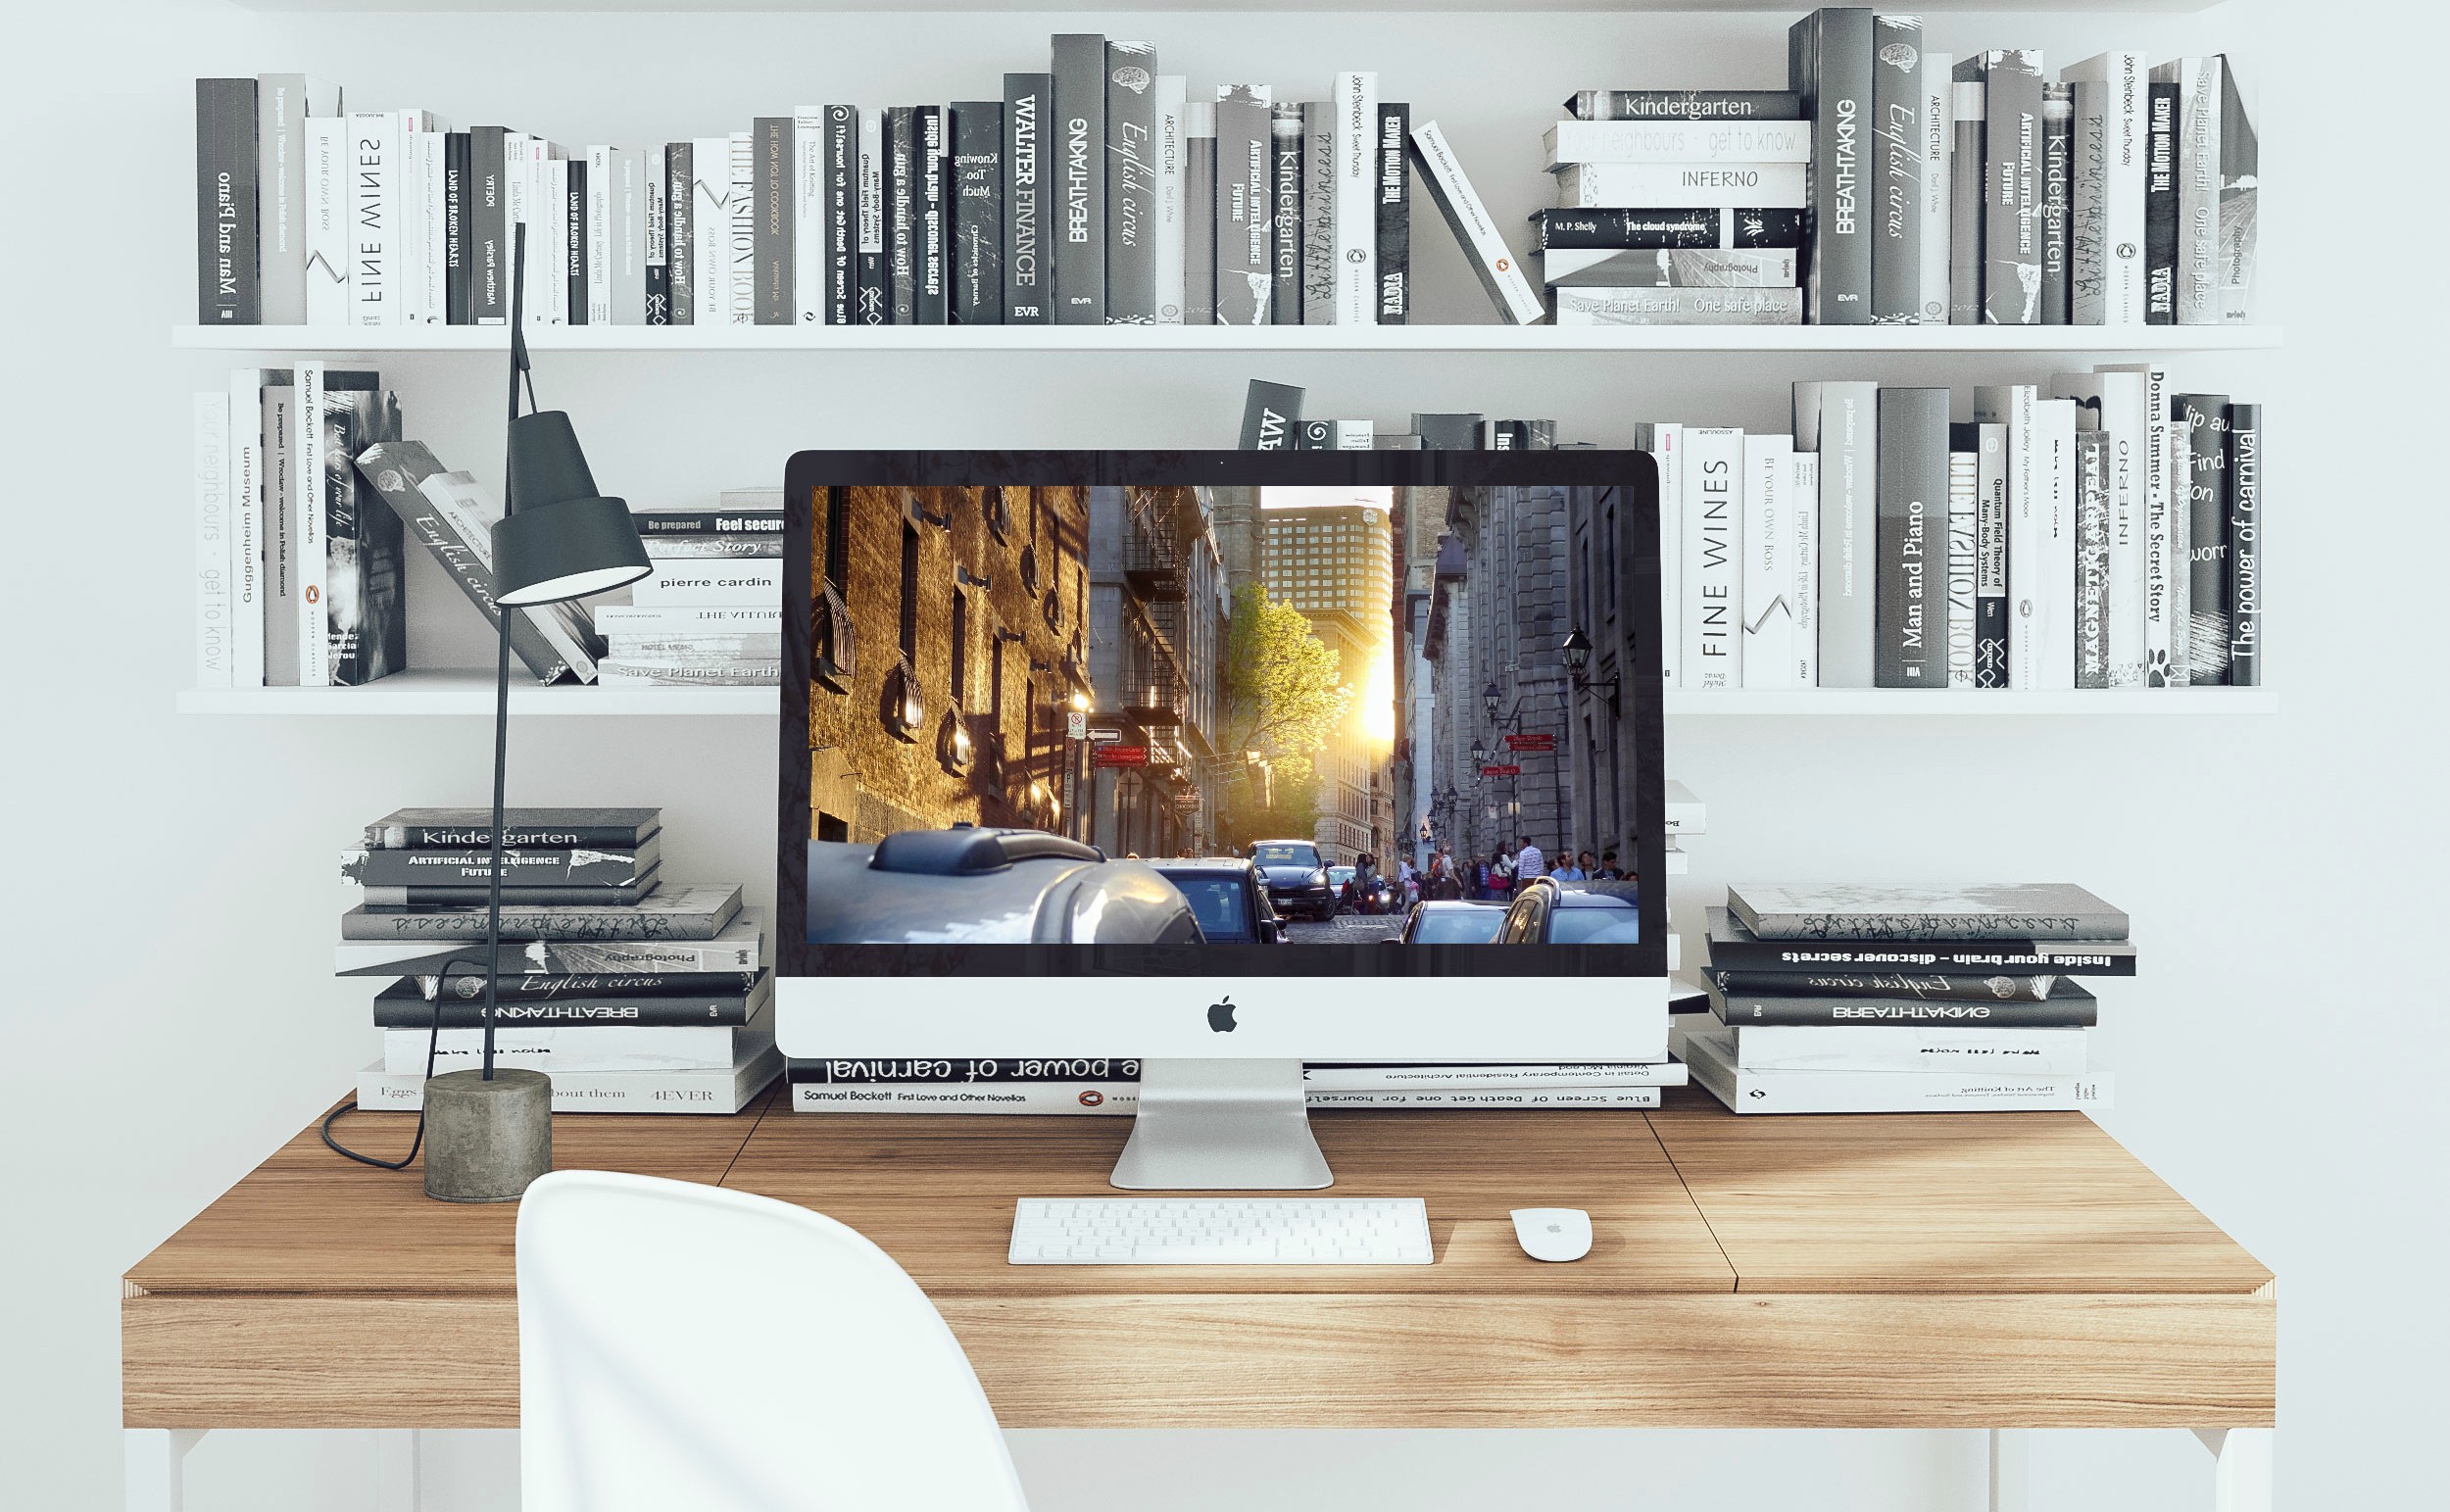 中古iMac (Retina 5K, 27-inch, Late 2015) を購入して使ってみたおすすめポイントを紹介 | share